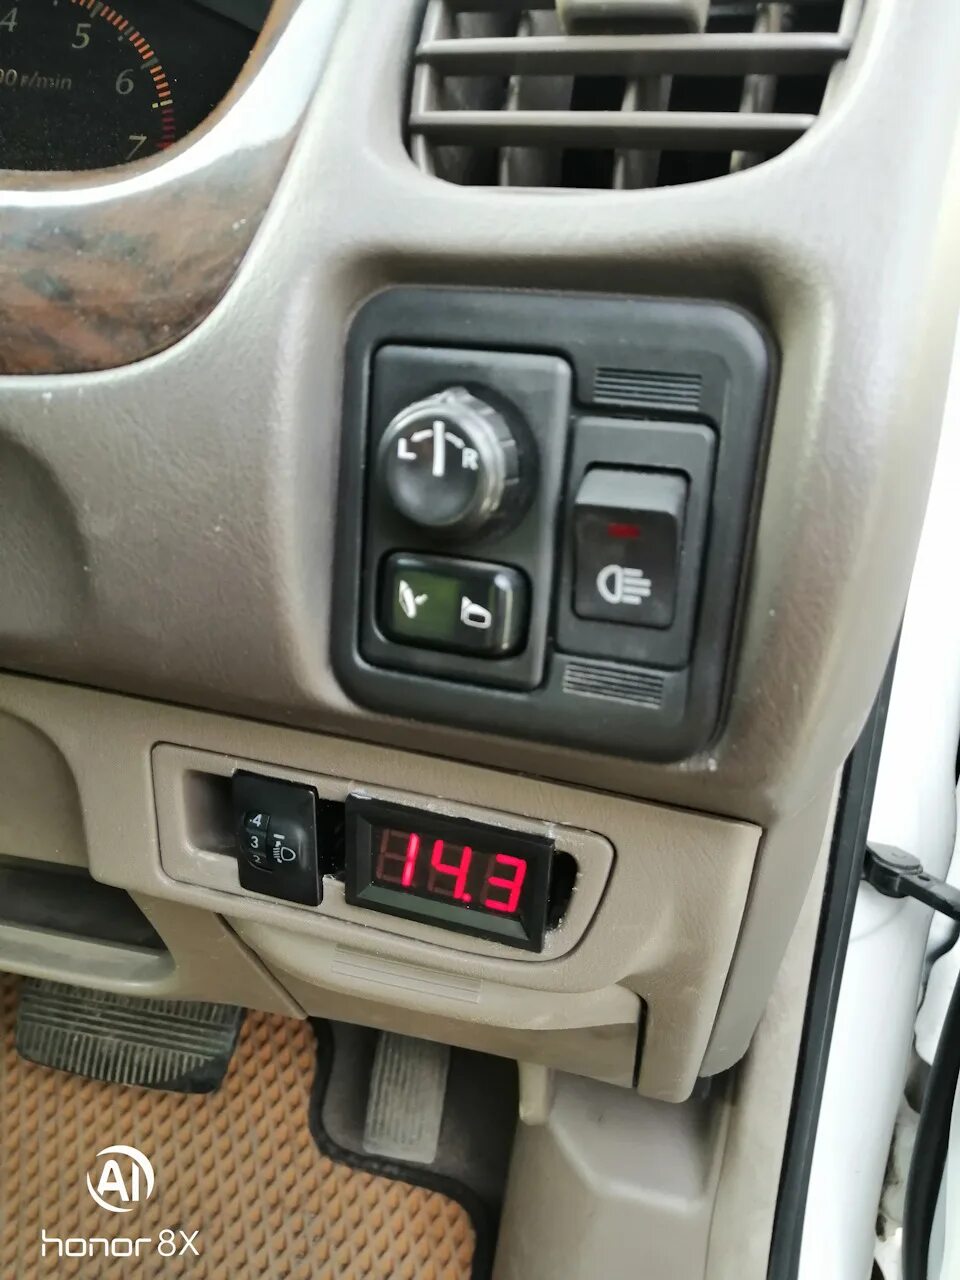 Прикуриватель Ниссан. Nissan Sunny b15 переходная рамка. Часы в Nissan Sunny b15. Вольтметр в Ниссан Альмера Классик.